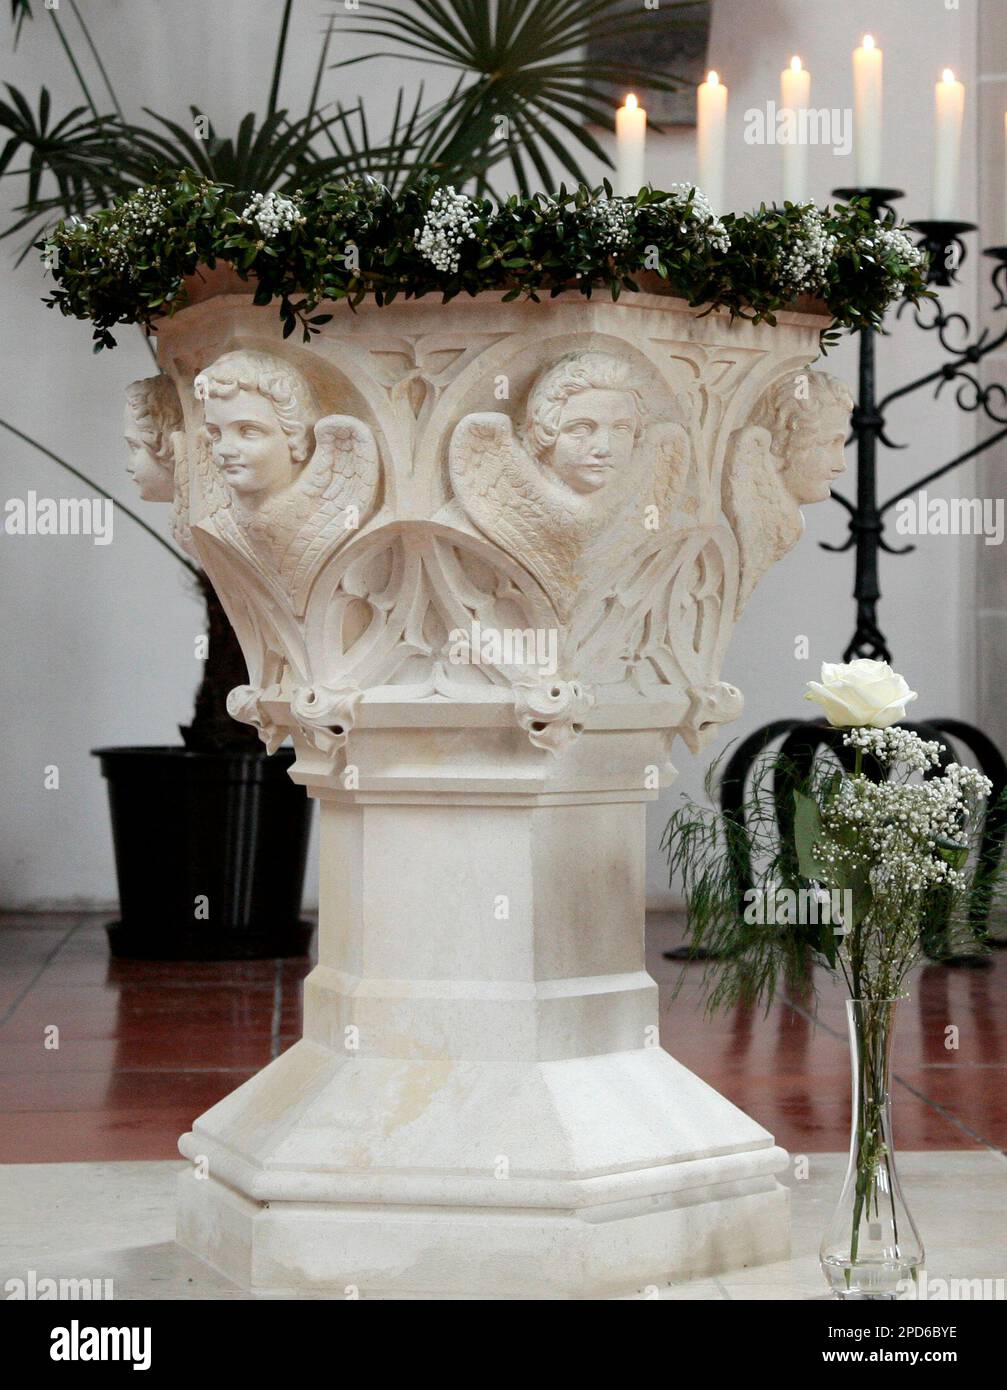 Der restaurierte alte Taufstein, an dem der heutige Papst Benedikt XVI. im  Jahr 1927 getauft worden war, steht an seinem 79. Geburtstag am Sonntag,  16. April 2006 ,in der Taufkirche seines Geburtsortes